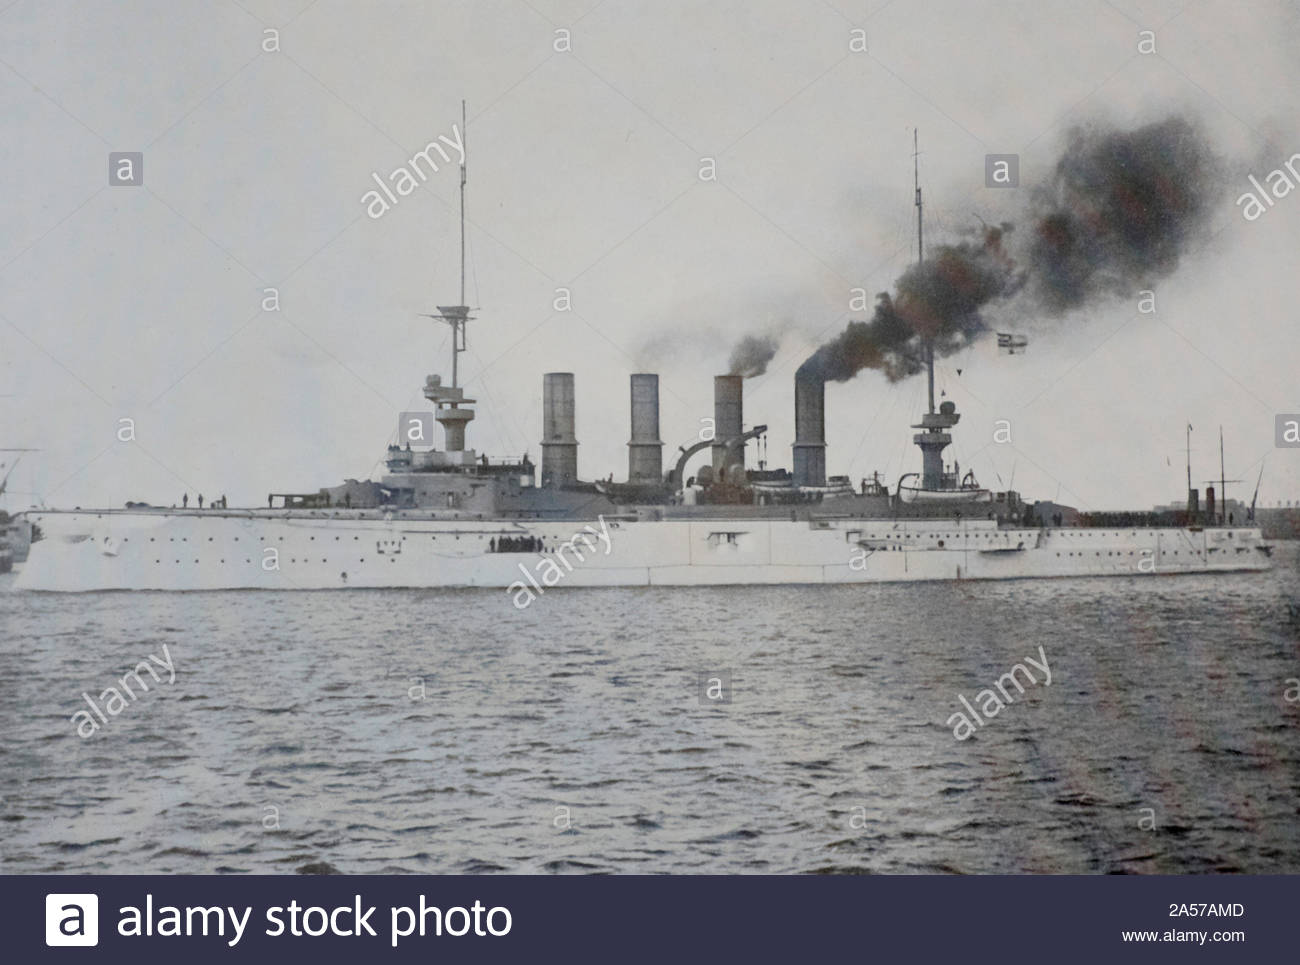 SMS Scharnhorst war ein WW1 gepanzerter Kreuzer der Kaiserlichen Marine, 1907 ins Leben gerufen und in der Schlacht bei den Falklandinseln am 8. Dezember 1914, vintage Foto aus dem Jahr 1900 gesunken s Stockfoto